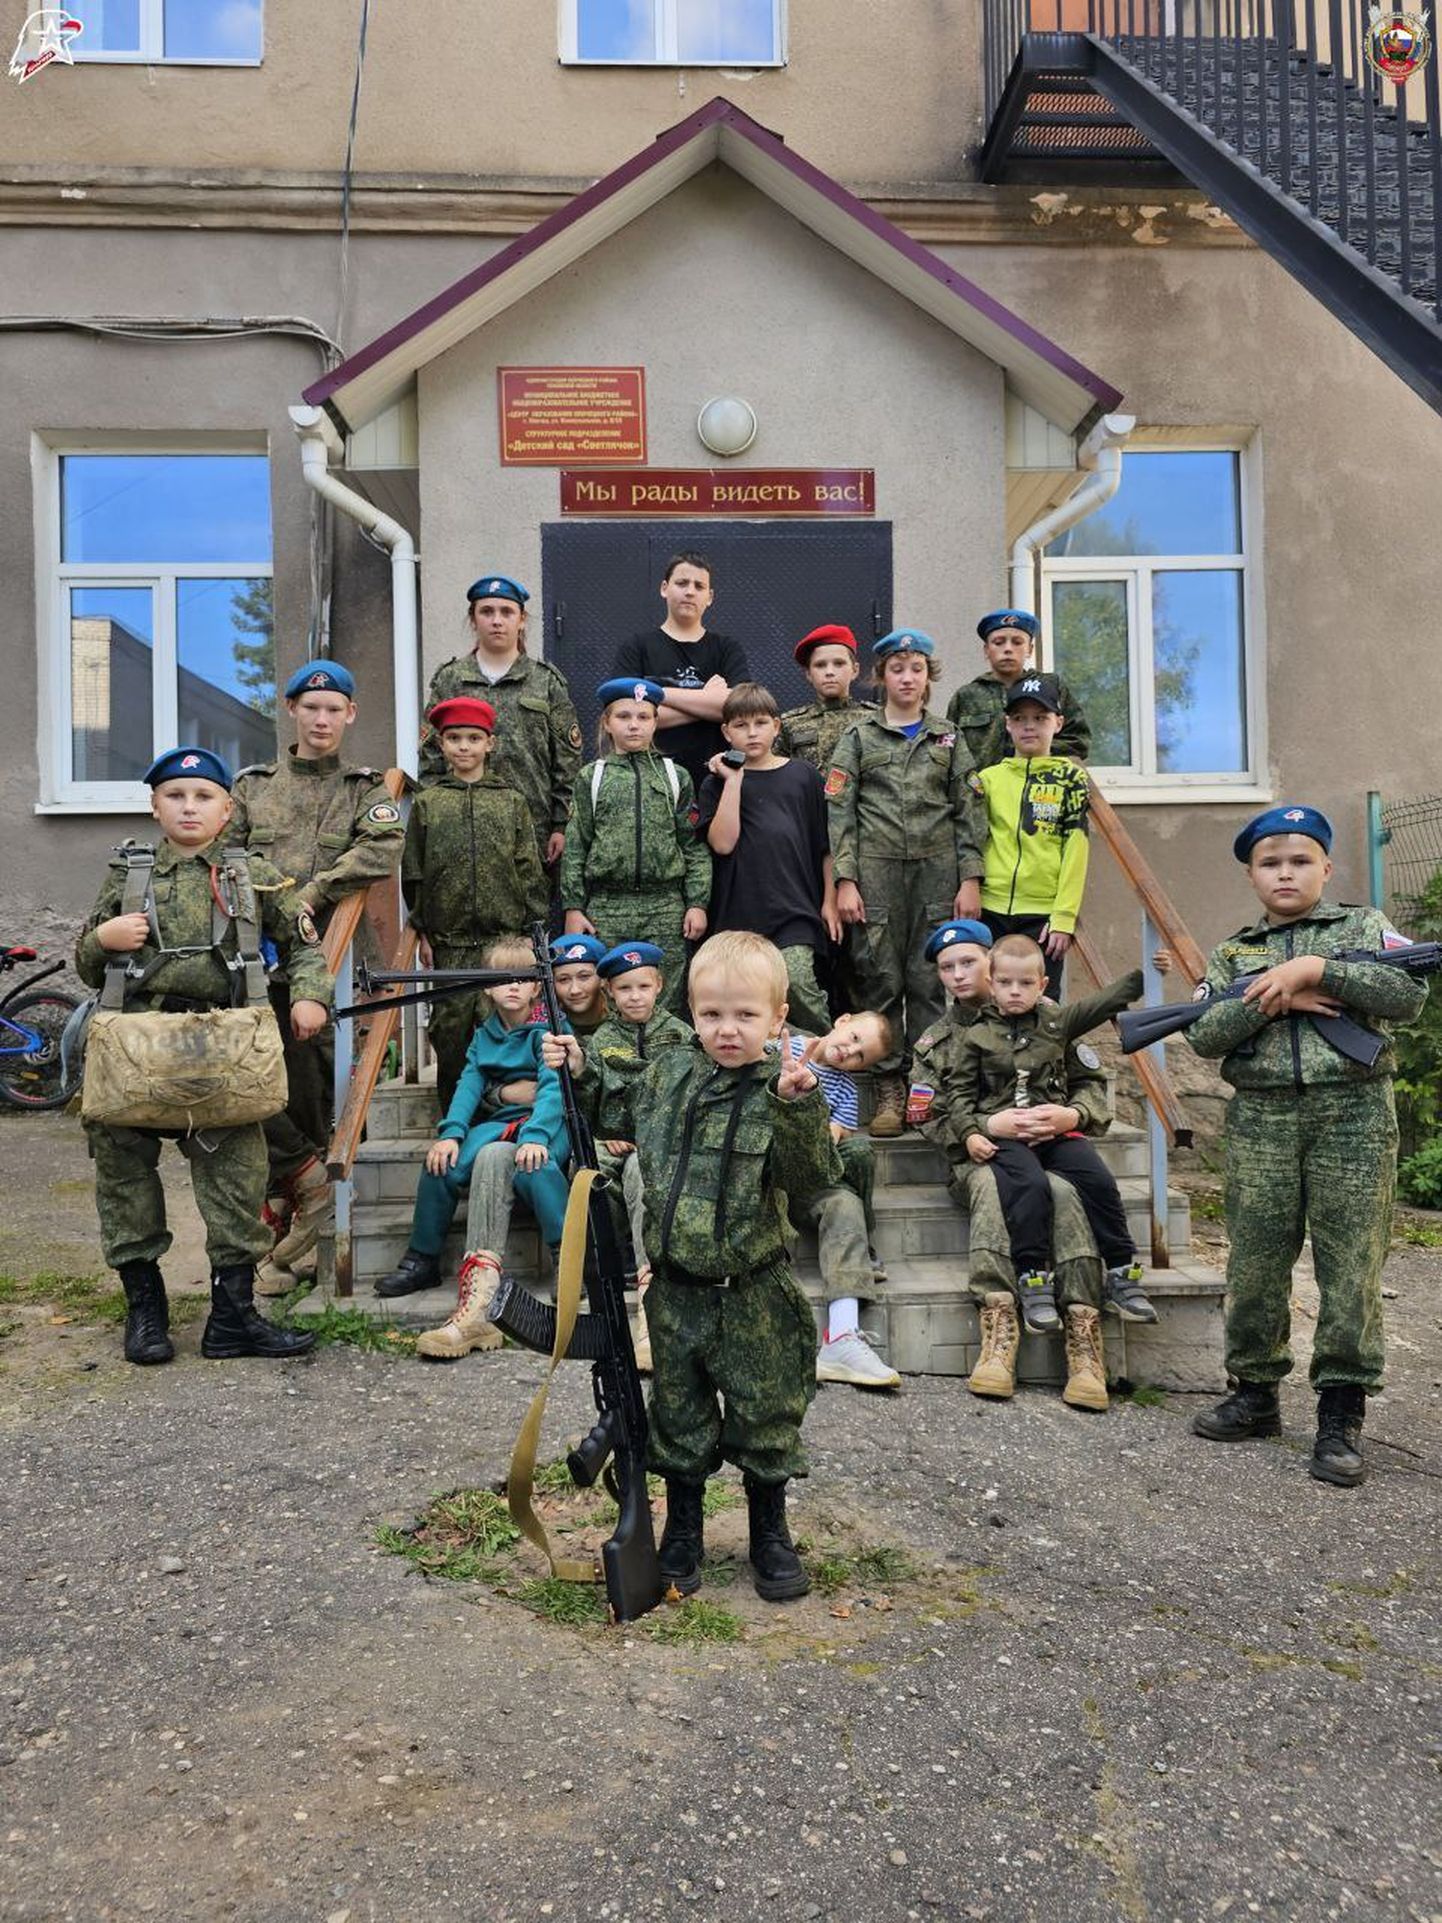 Pihkva oblastis algab sõjaline kasvatus juba lasteaias.